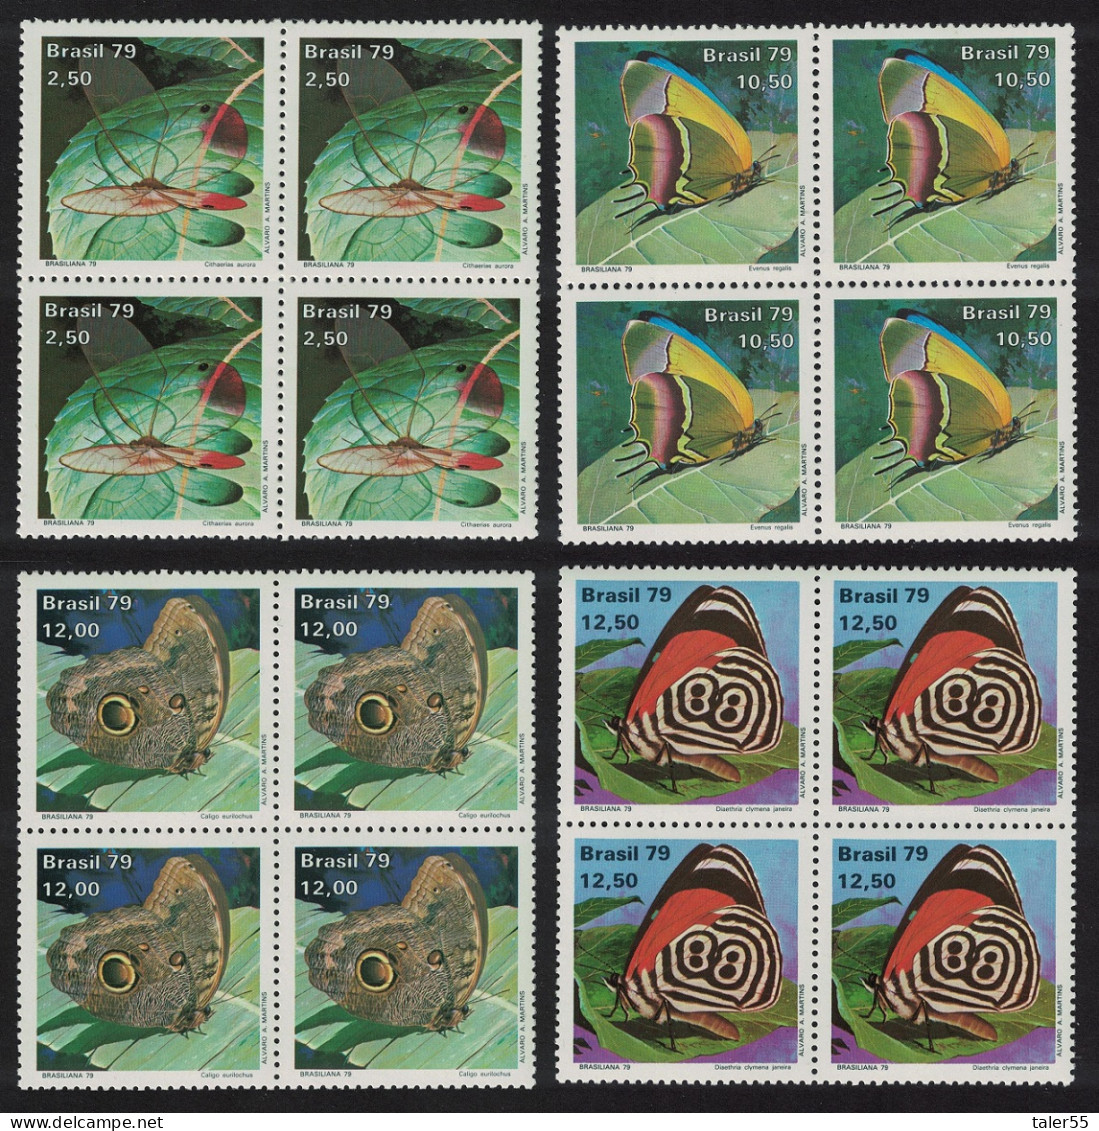 Brazil Butterflies 4v Blocks Of 4 1979 MNH SG#1773-1776 - Ongebruikt